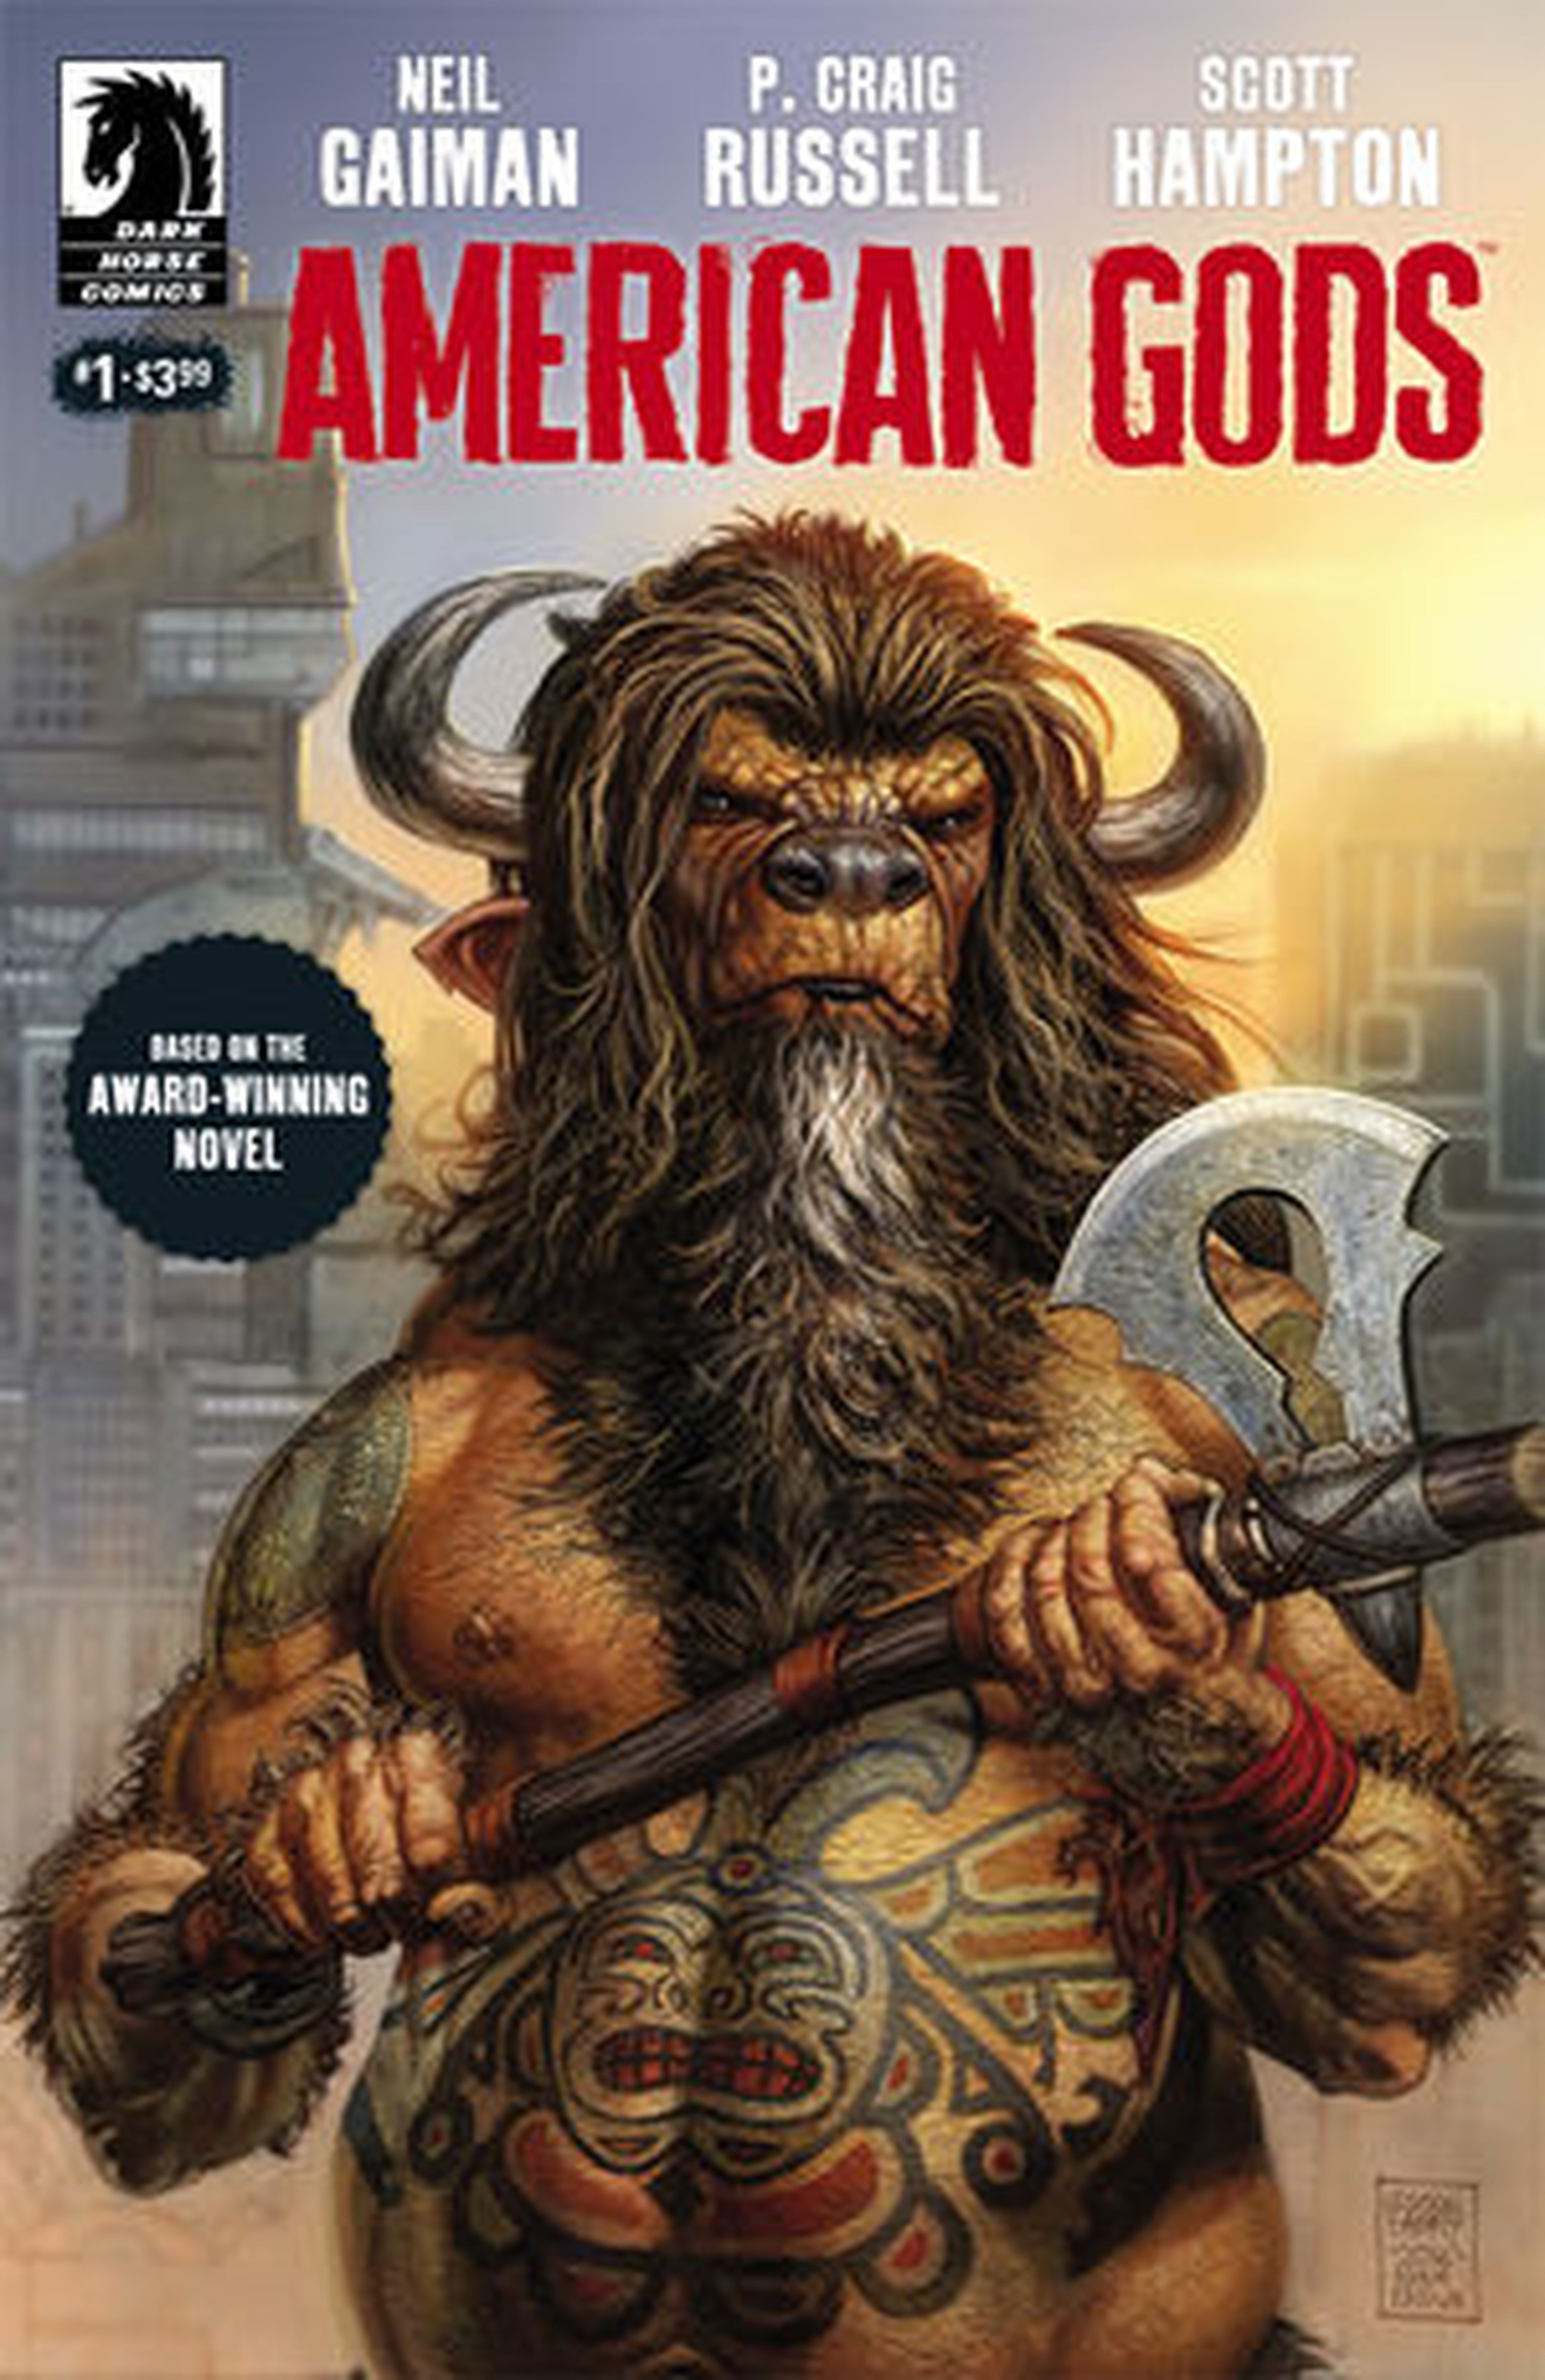 American Gods cómic Portada